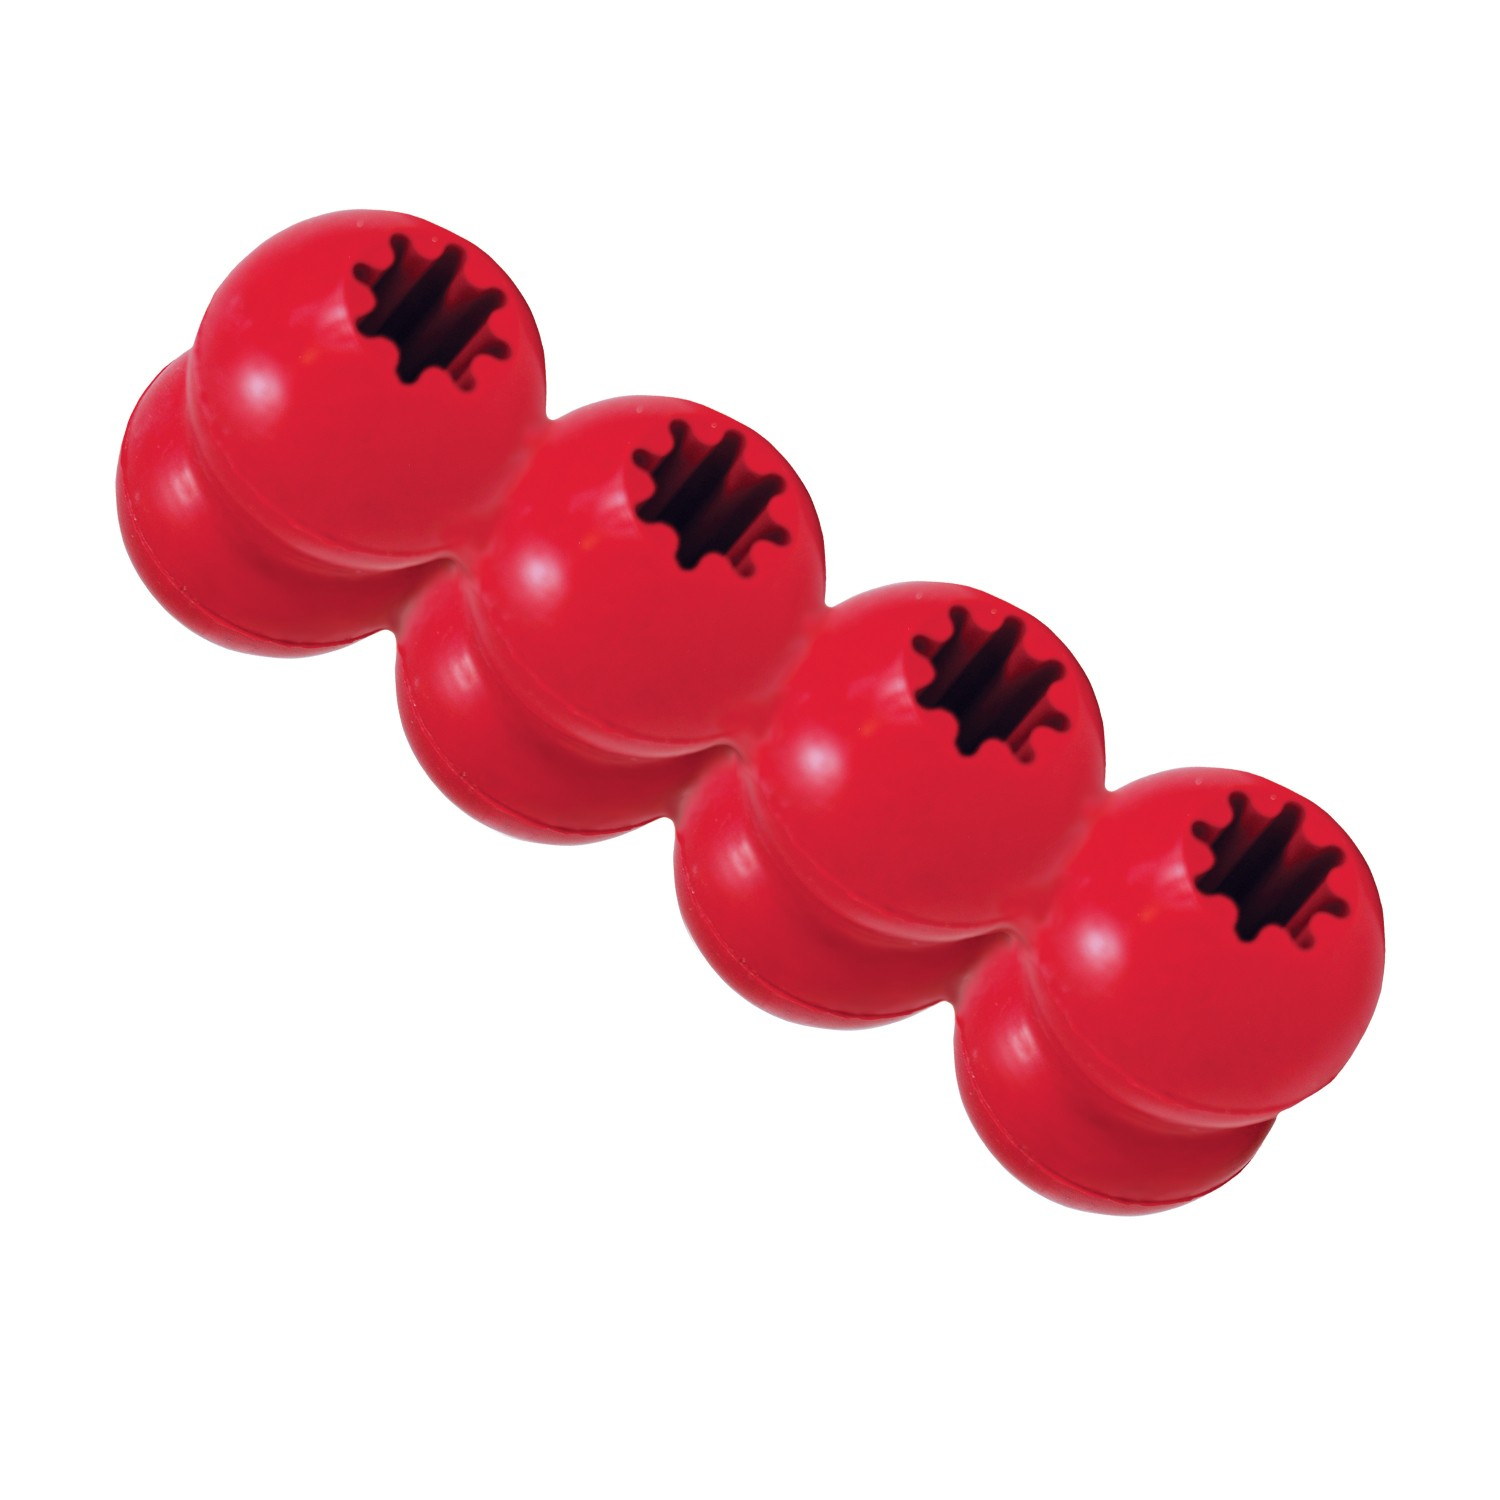 KONG Goodie Ribbon Hundespielzeug Leckerlispender- 3 Größen erhältlich